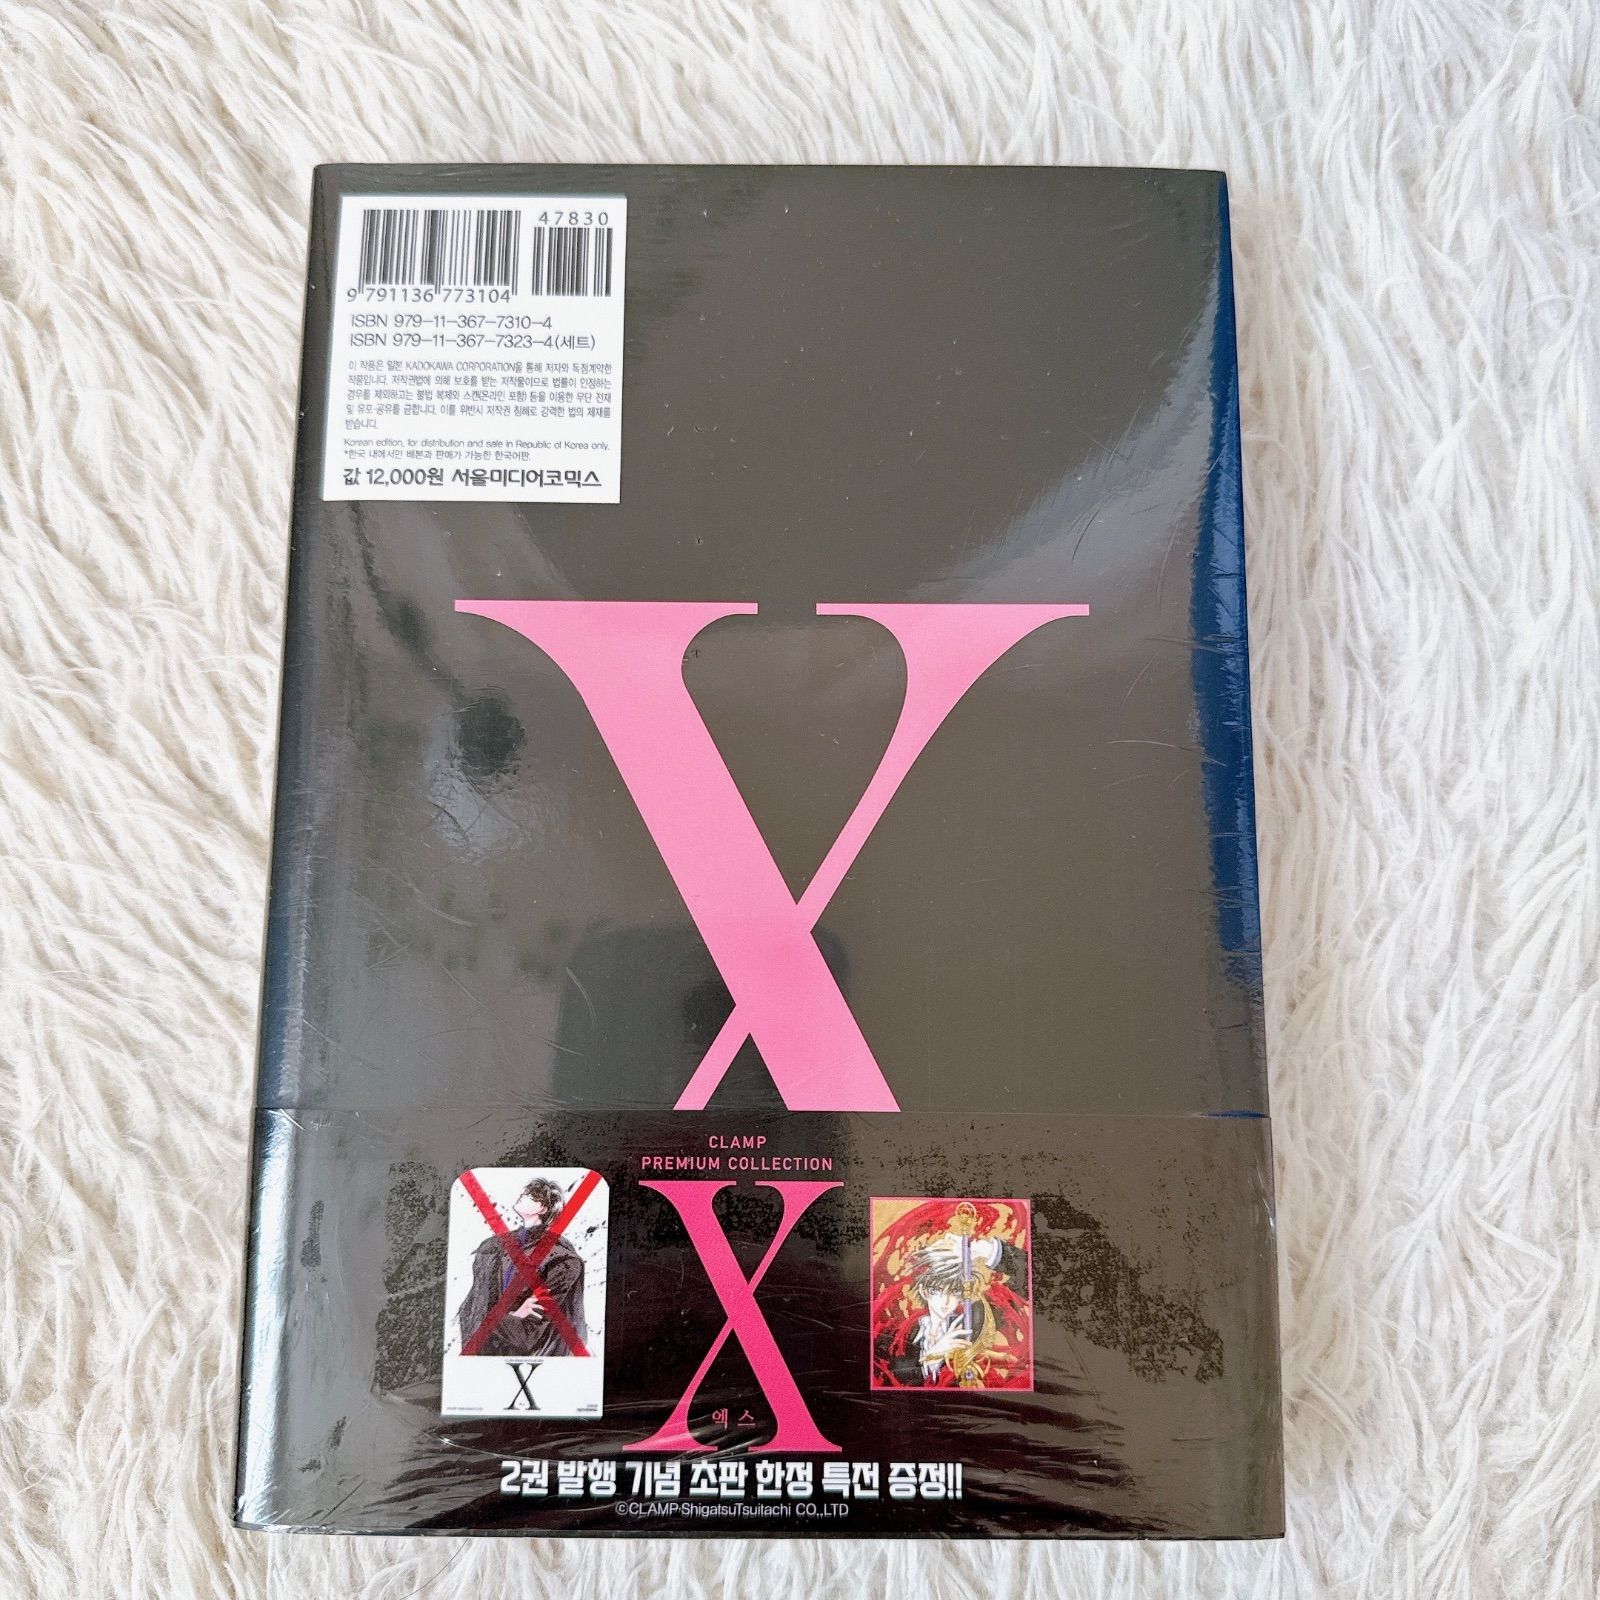 CLAMP X 2巻 韓国版 特典付き 韓国語 韓国限定 - メルカリ